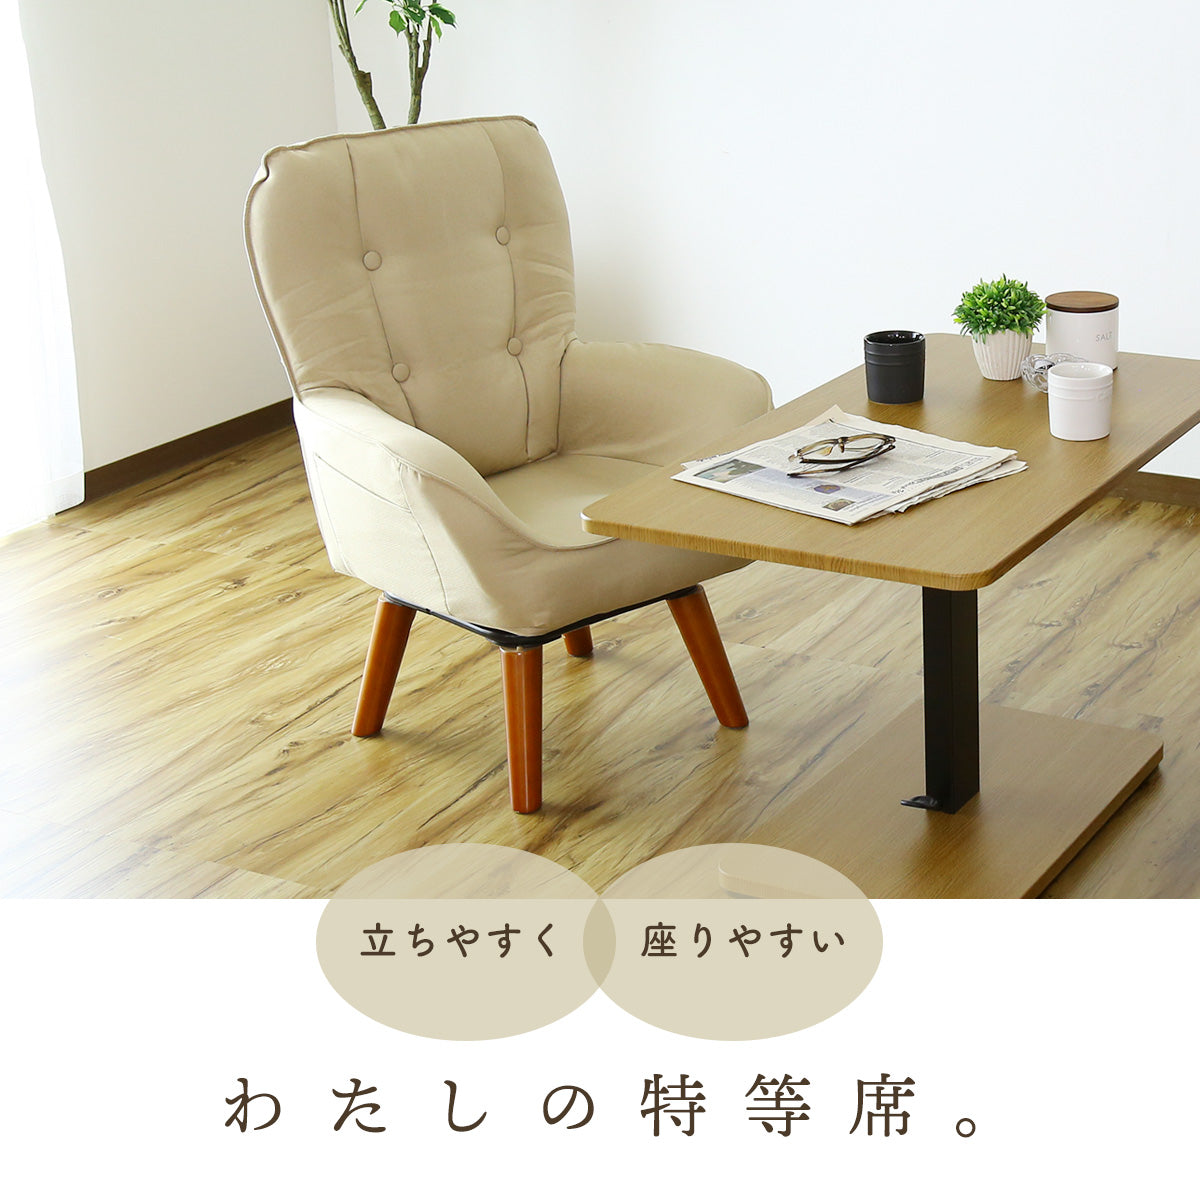 卸し売り購入 【グレー】ソファ ソファー 椅子 チェア 一人掛けソファ